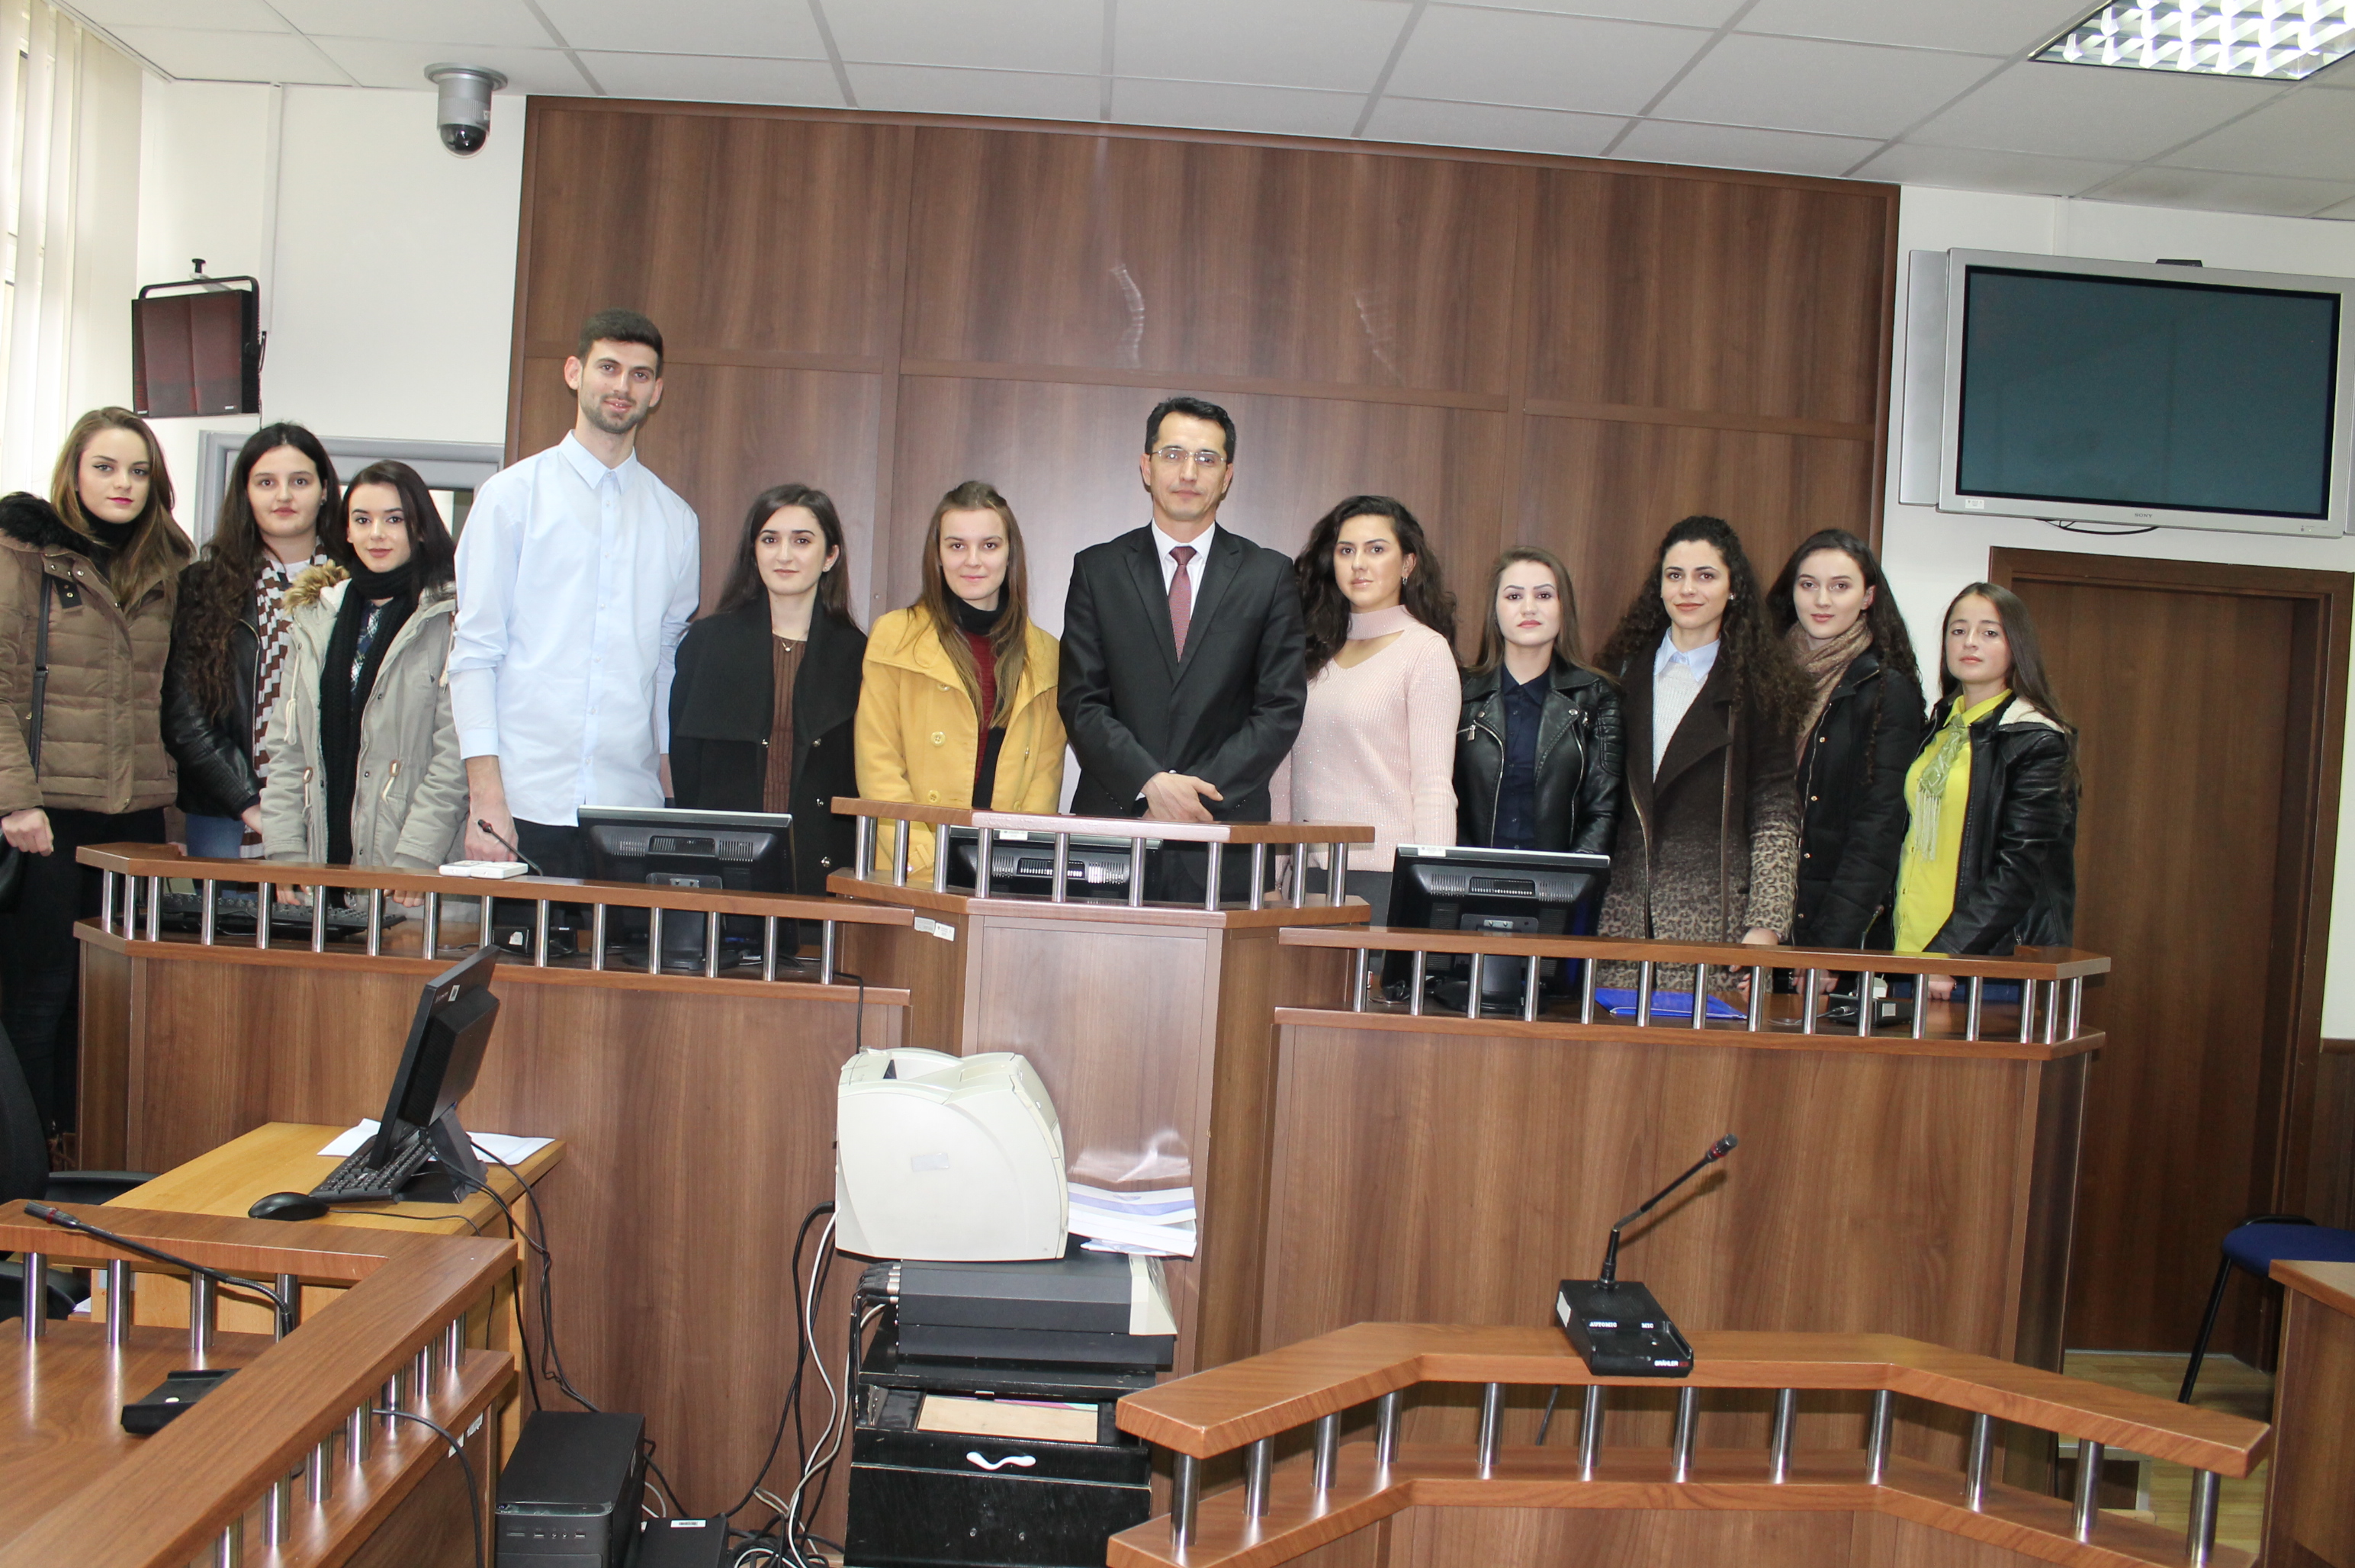 Vizitë Gjykatës Themelore në Prizren